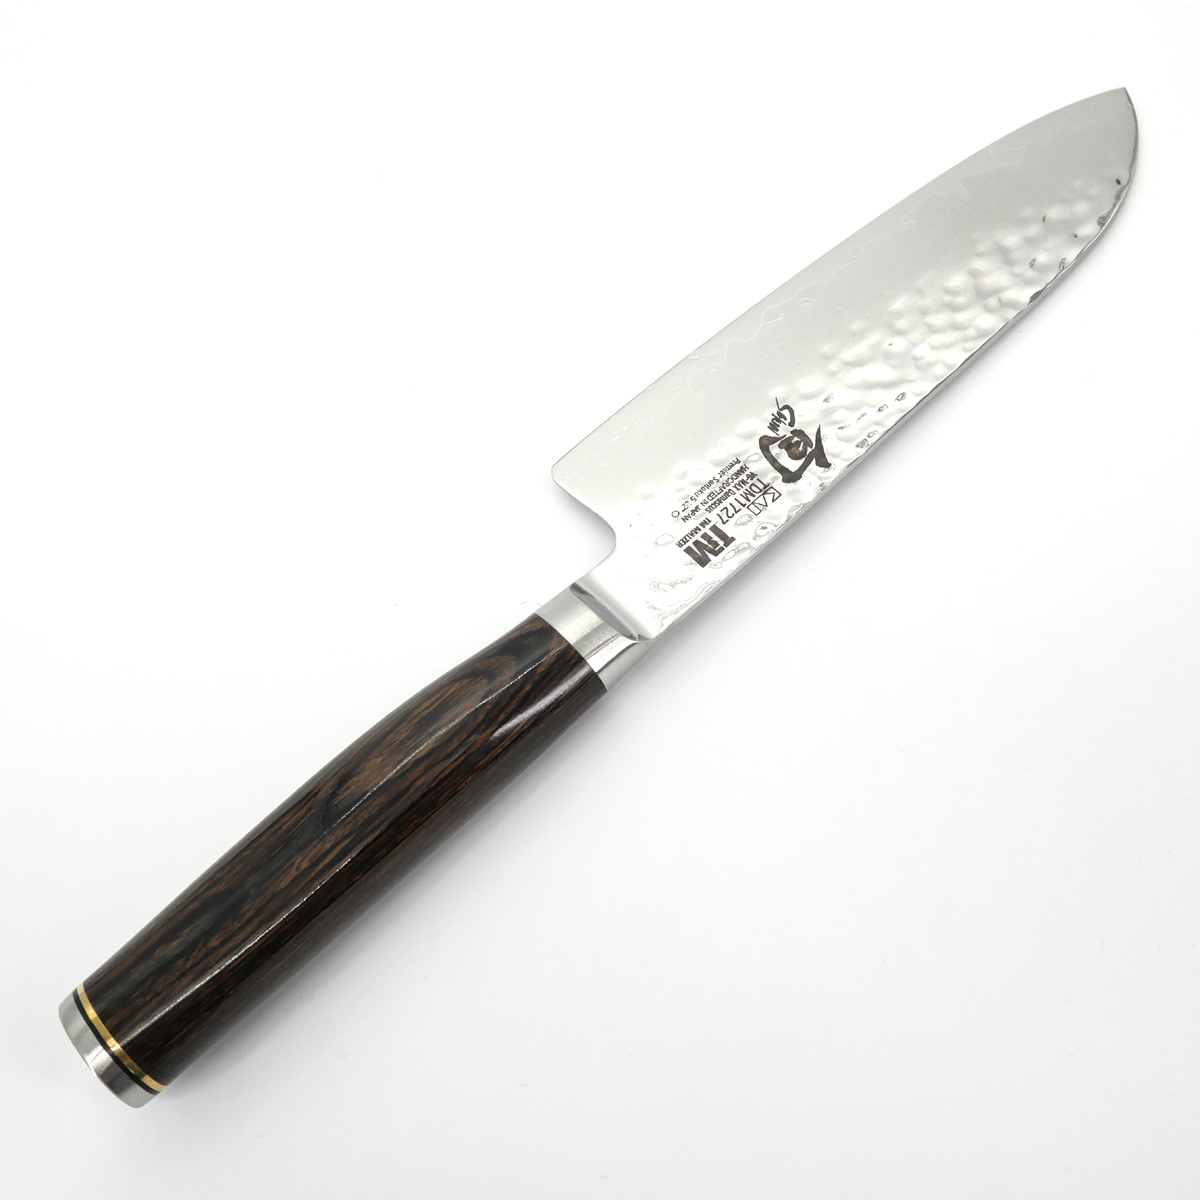 Coffret couteaux de table japonais Kai Shun damas